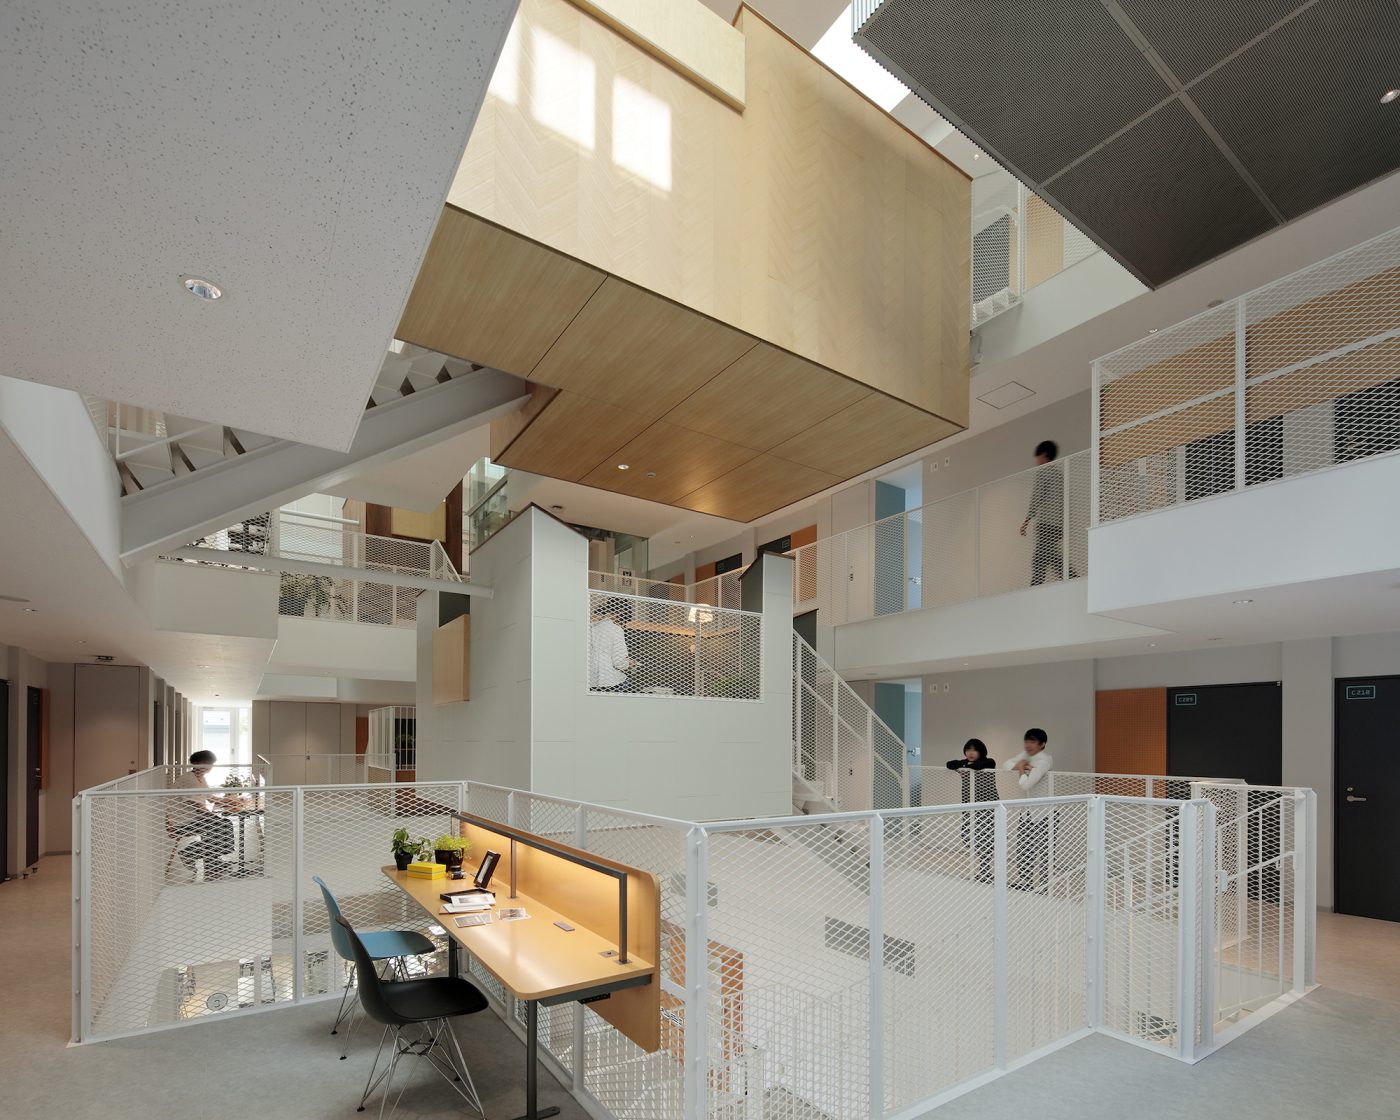 「共同生活を通した新しい交流空間の実現」を求められた、200人の学生が集まって暮らす神奈川大学新国際学生寮の計画。（写真提供：鳥村 鋼一）